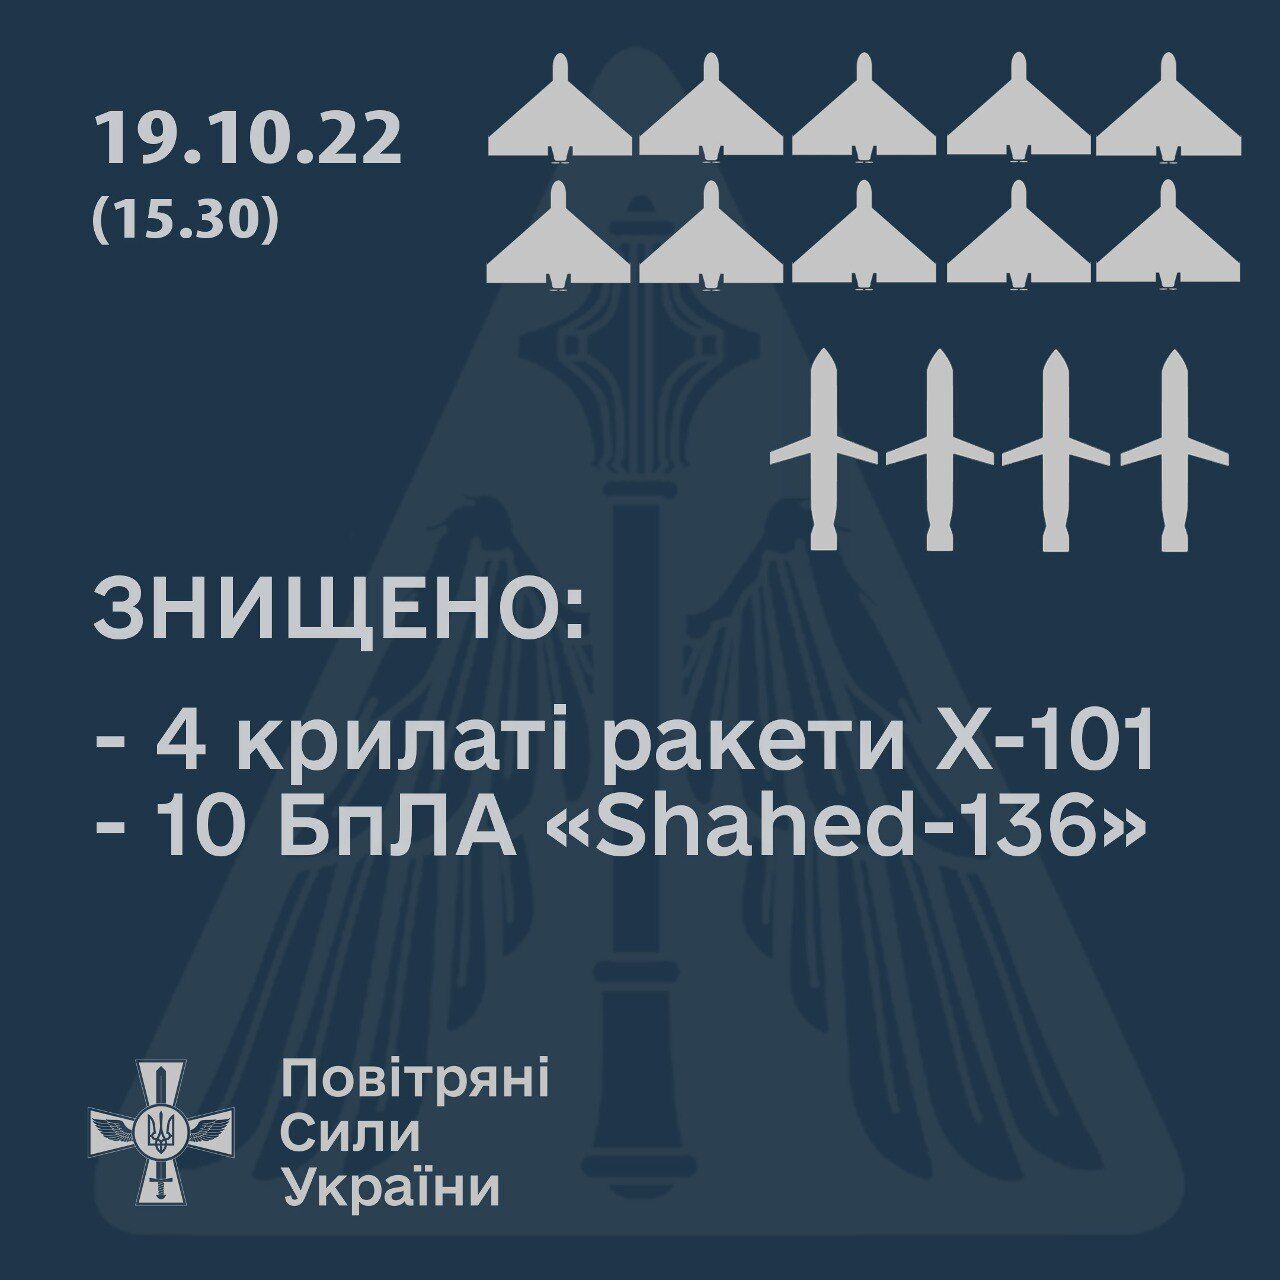 За 5 часов российской атаки с воздуха сбиты 4 крылатые ракеты и 10 ''Шахедов'' – Воздушные силы ВСУ